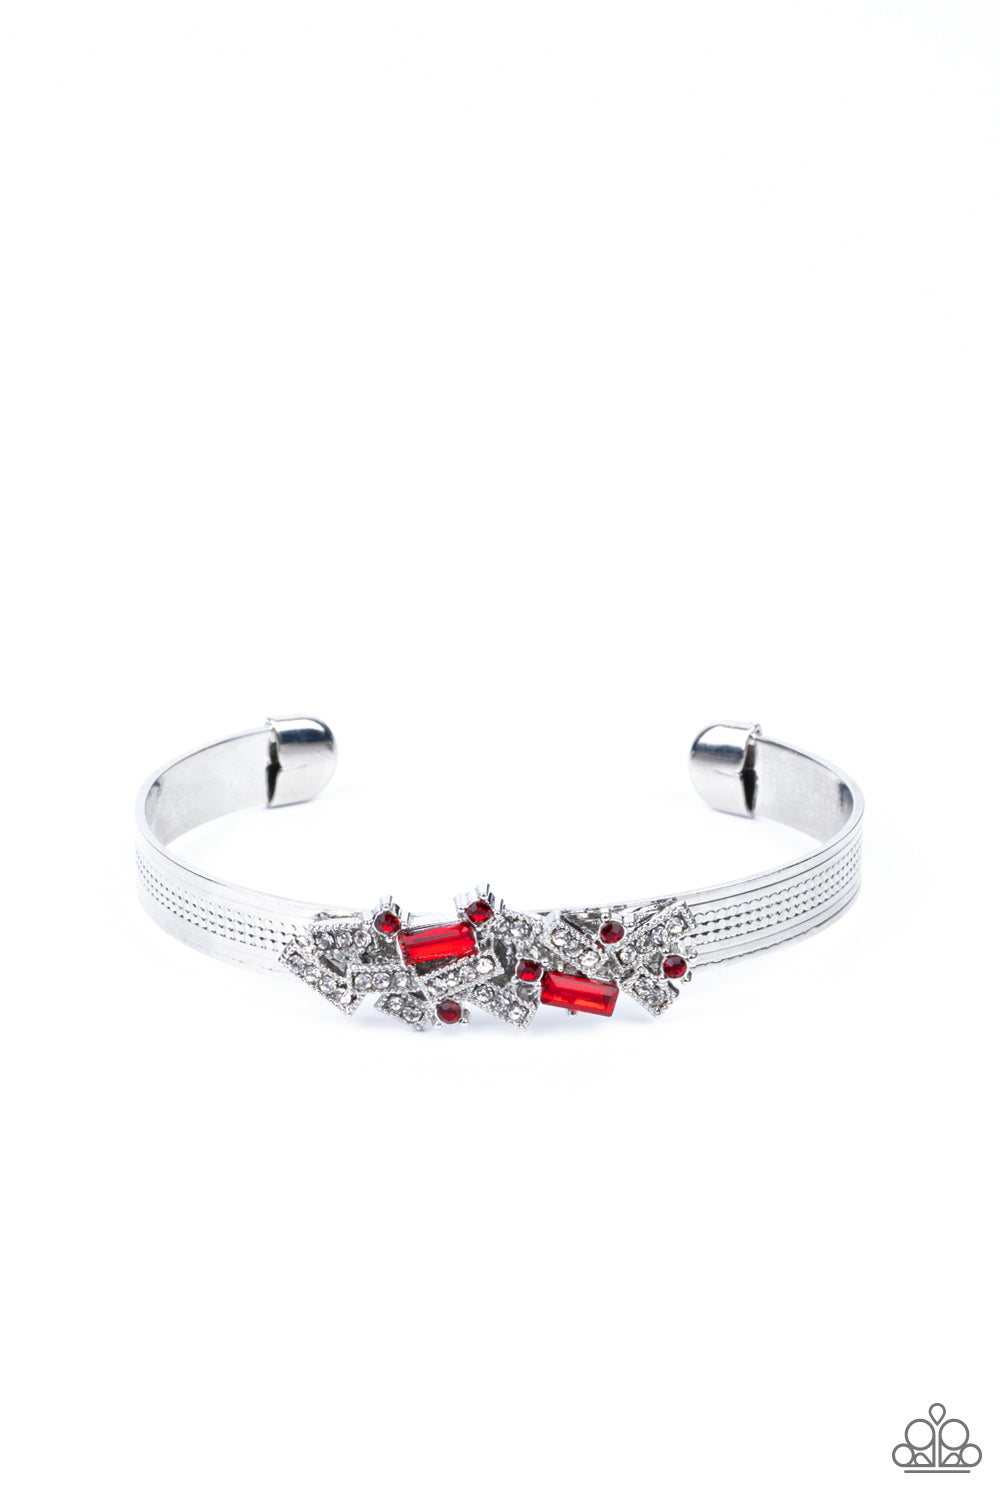 A Chic Clique - Red cuff bracelet